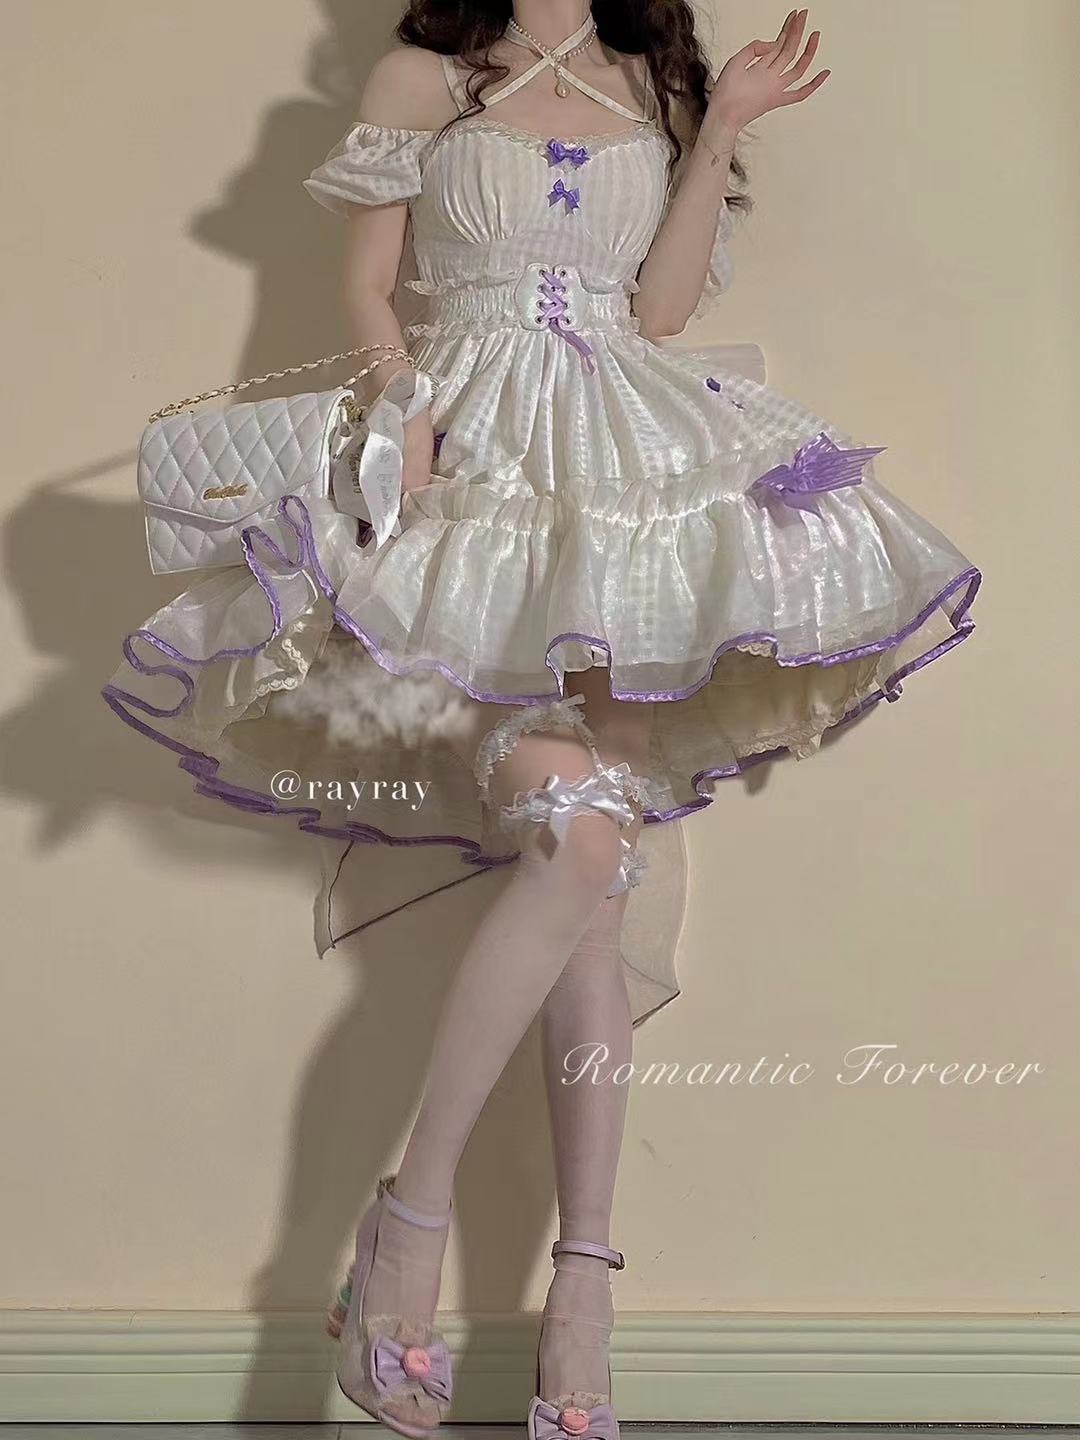 Kawaii Doll Good Night Friday Lolita Dress MK160141